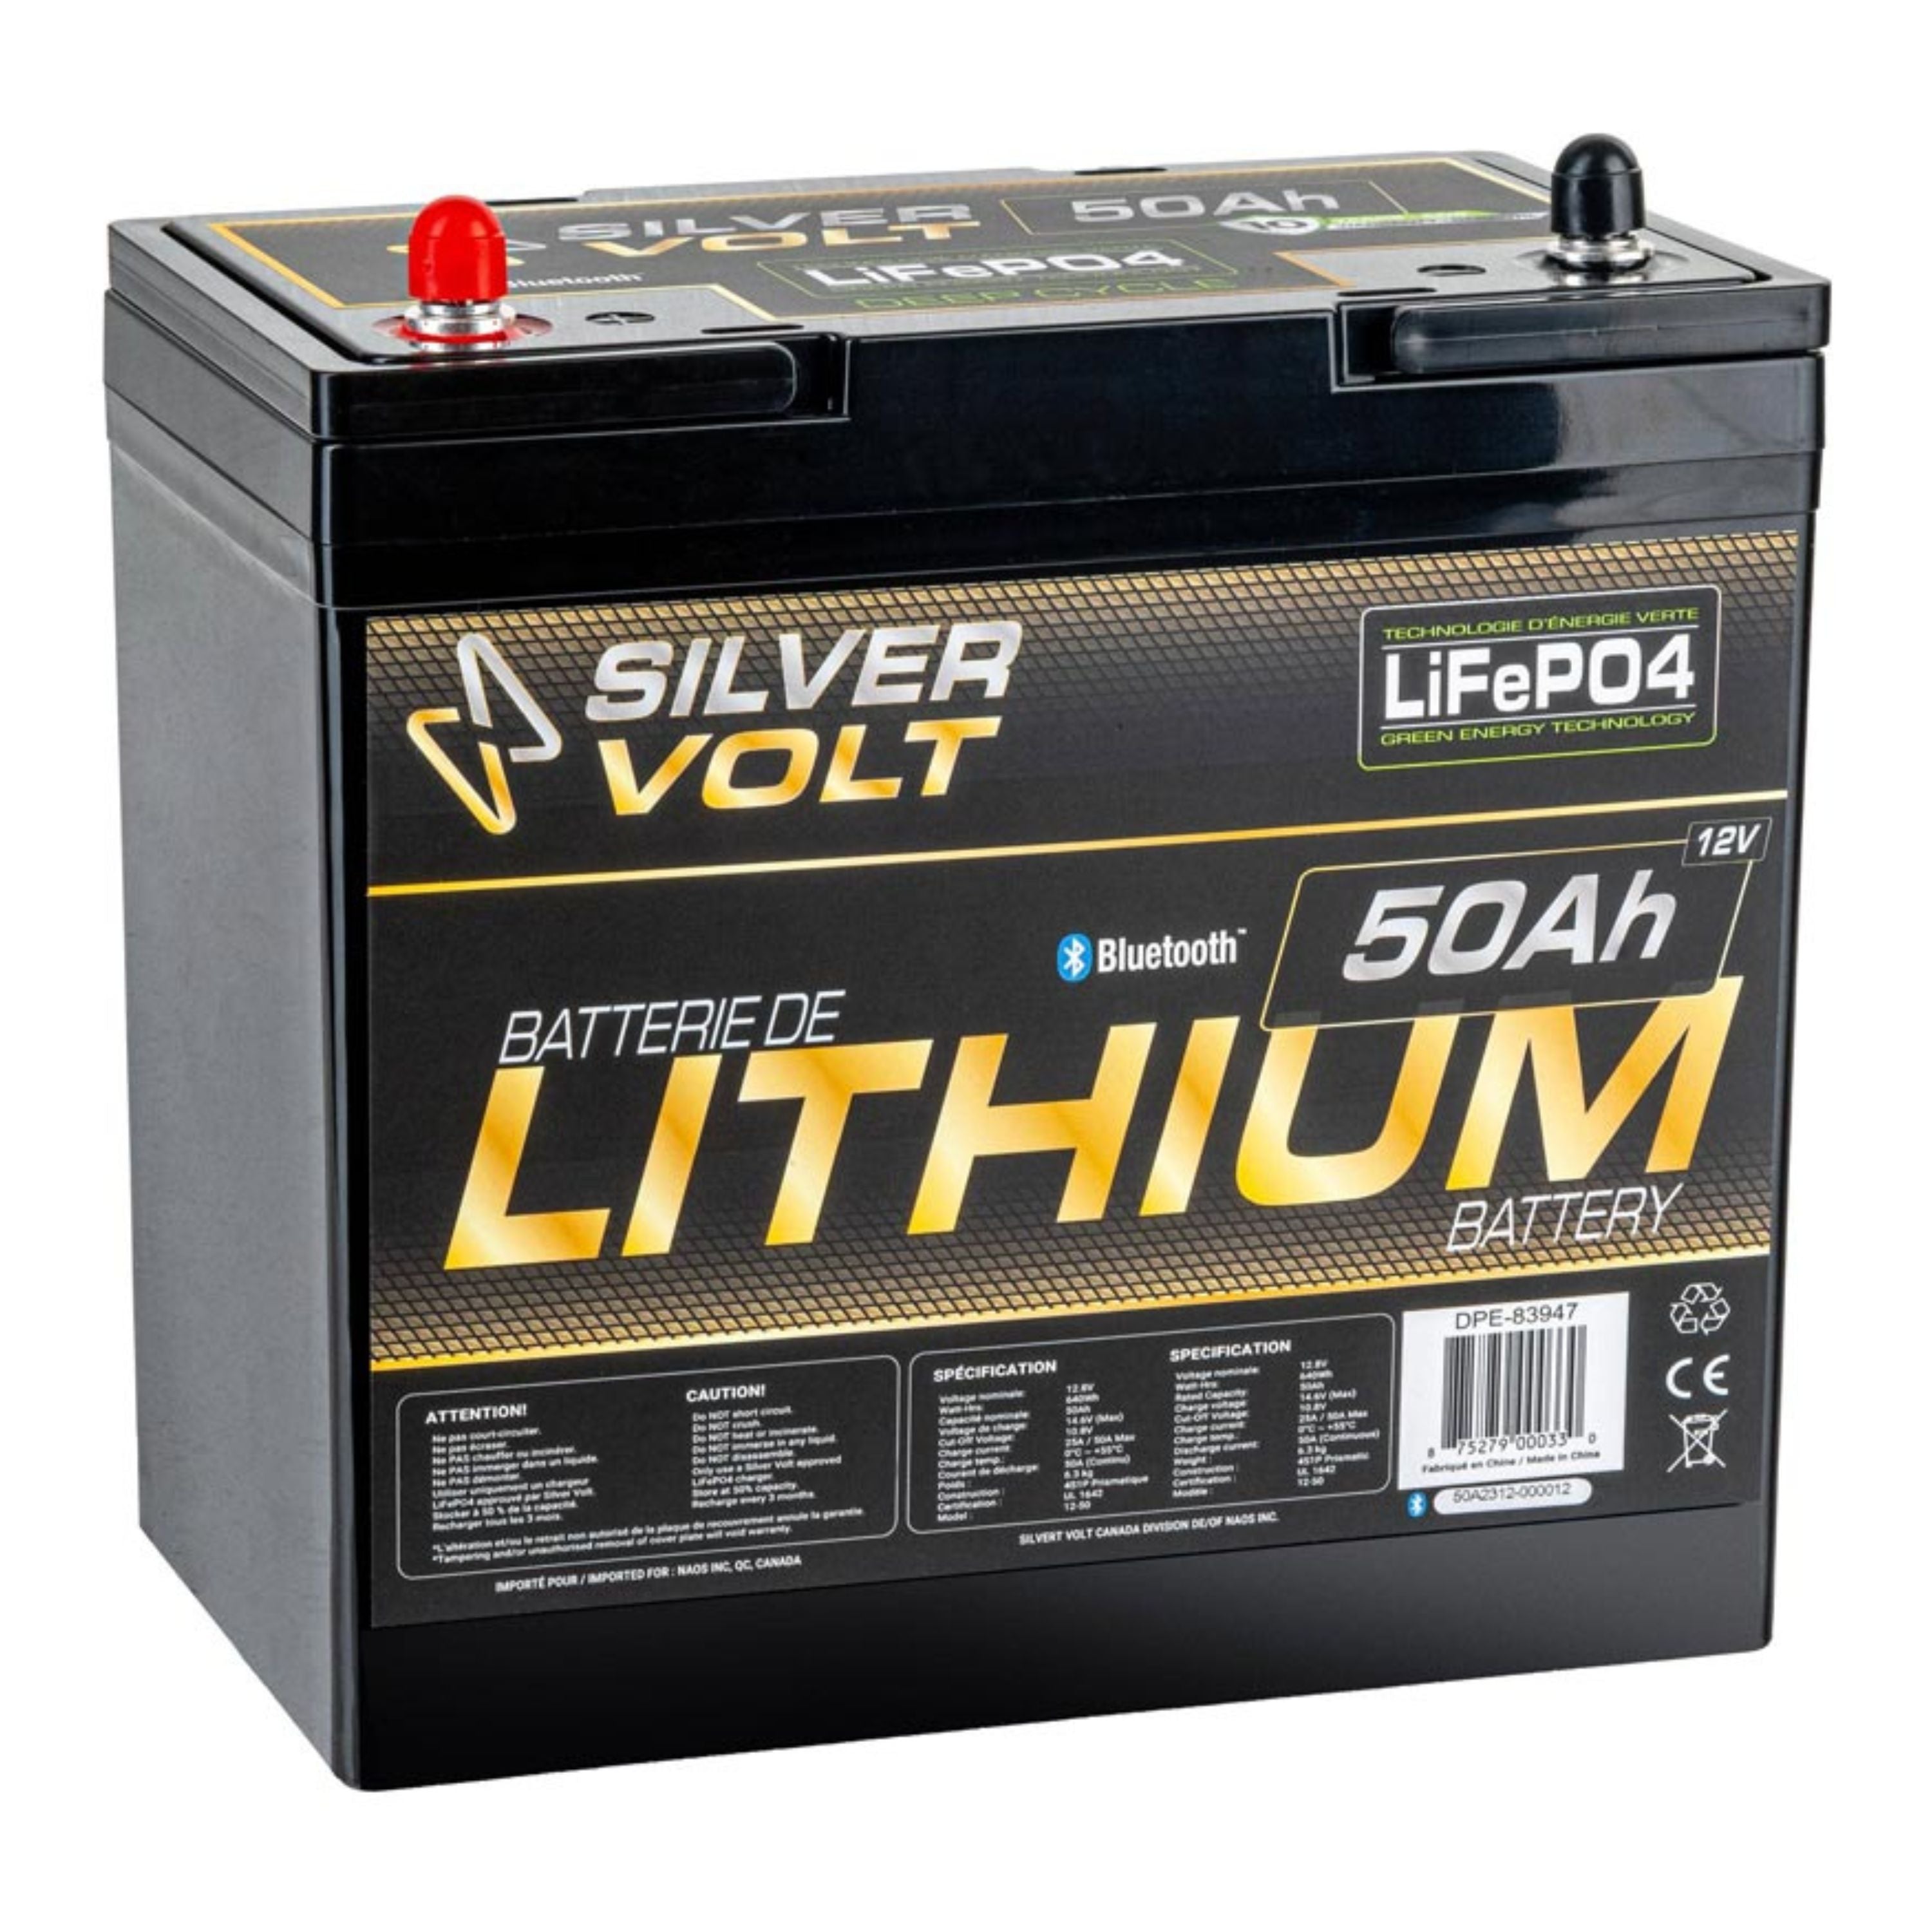 Batterie au lithium rechargeable "LiFePO4" - 50 A